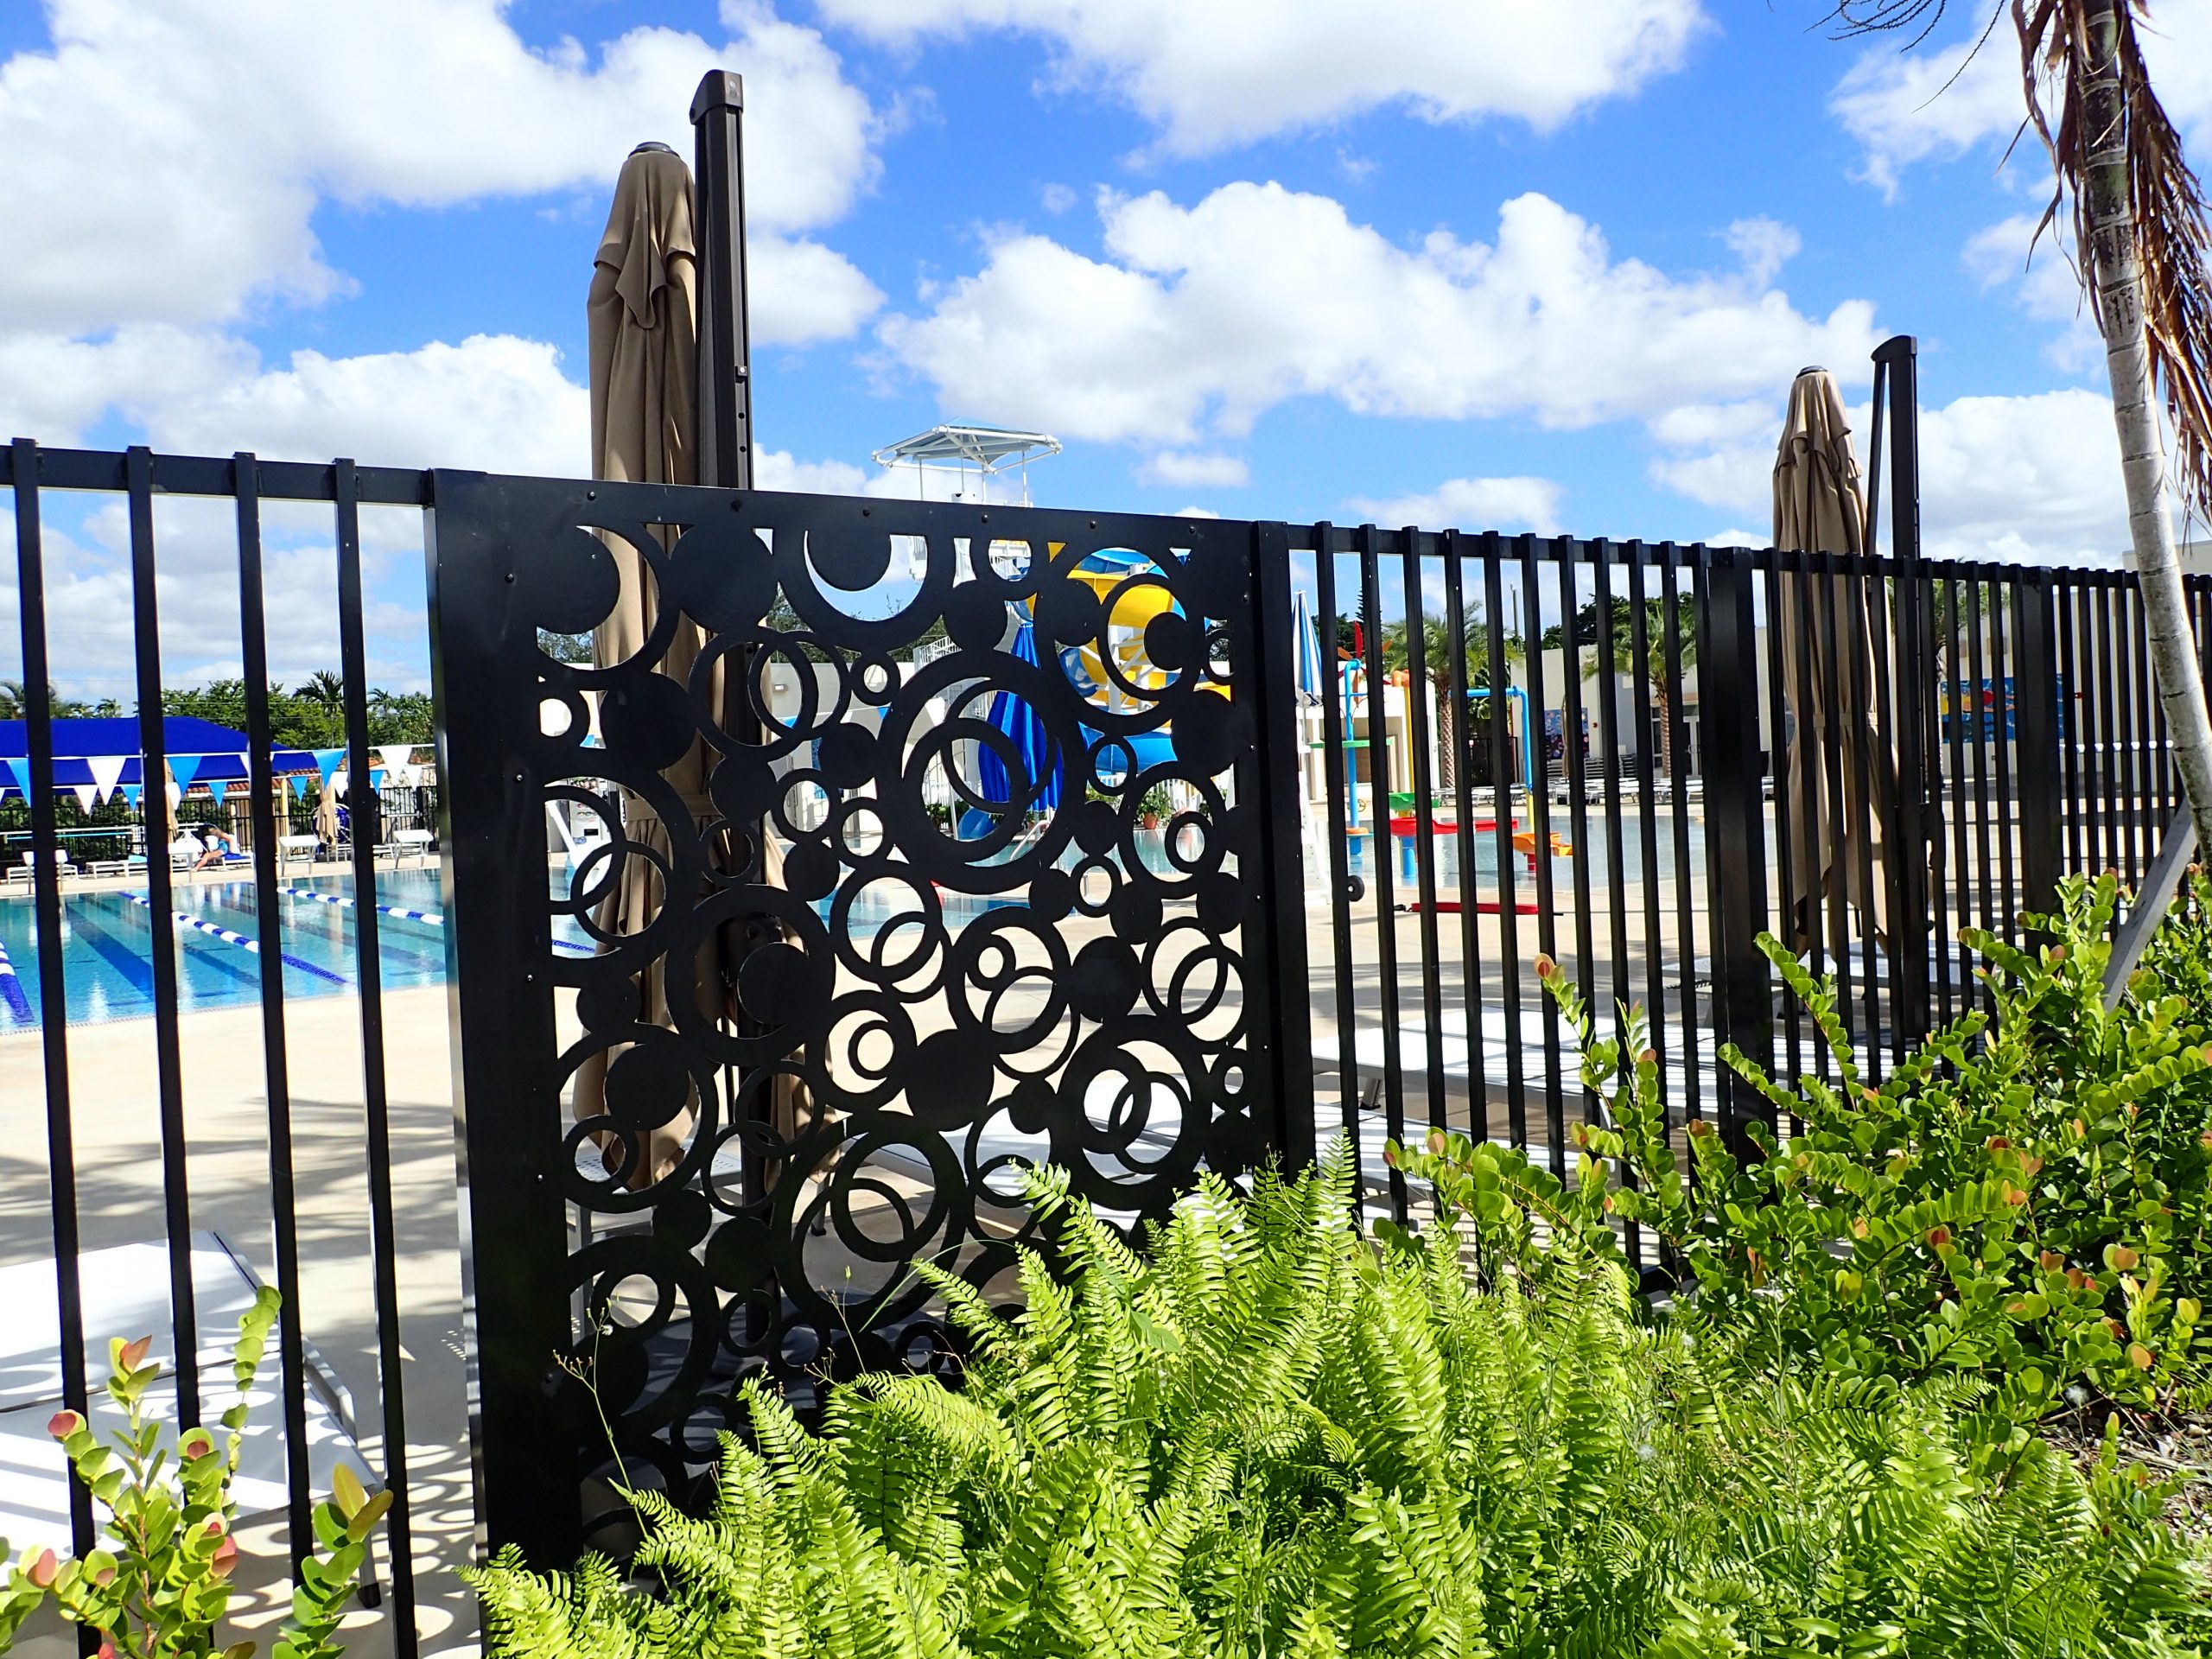 Miami Springs Aquatic Center – Sculpture & Decorative Fence